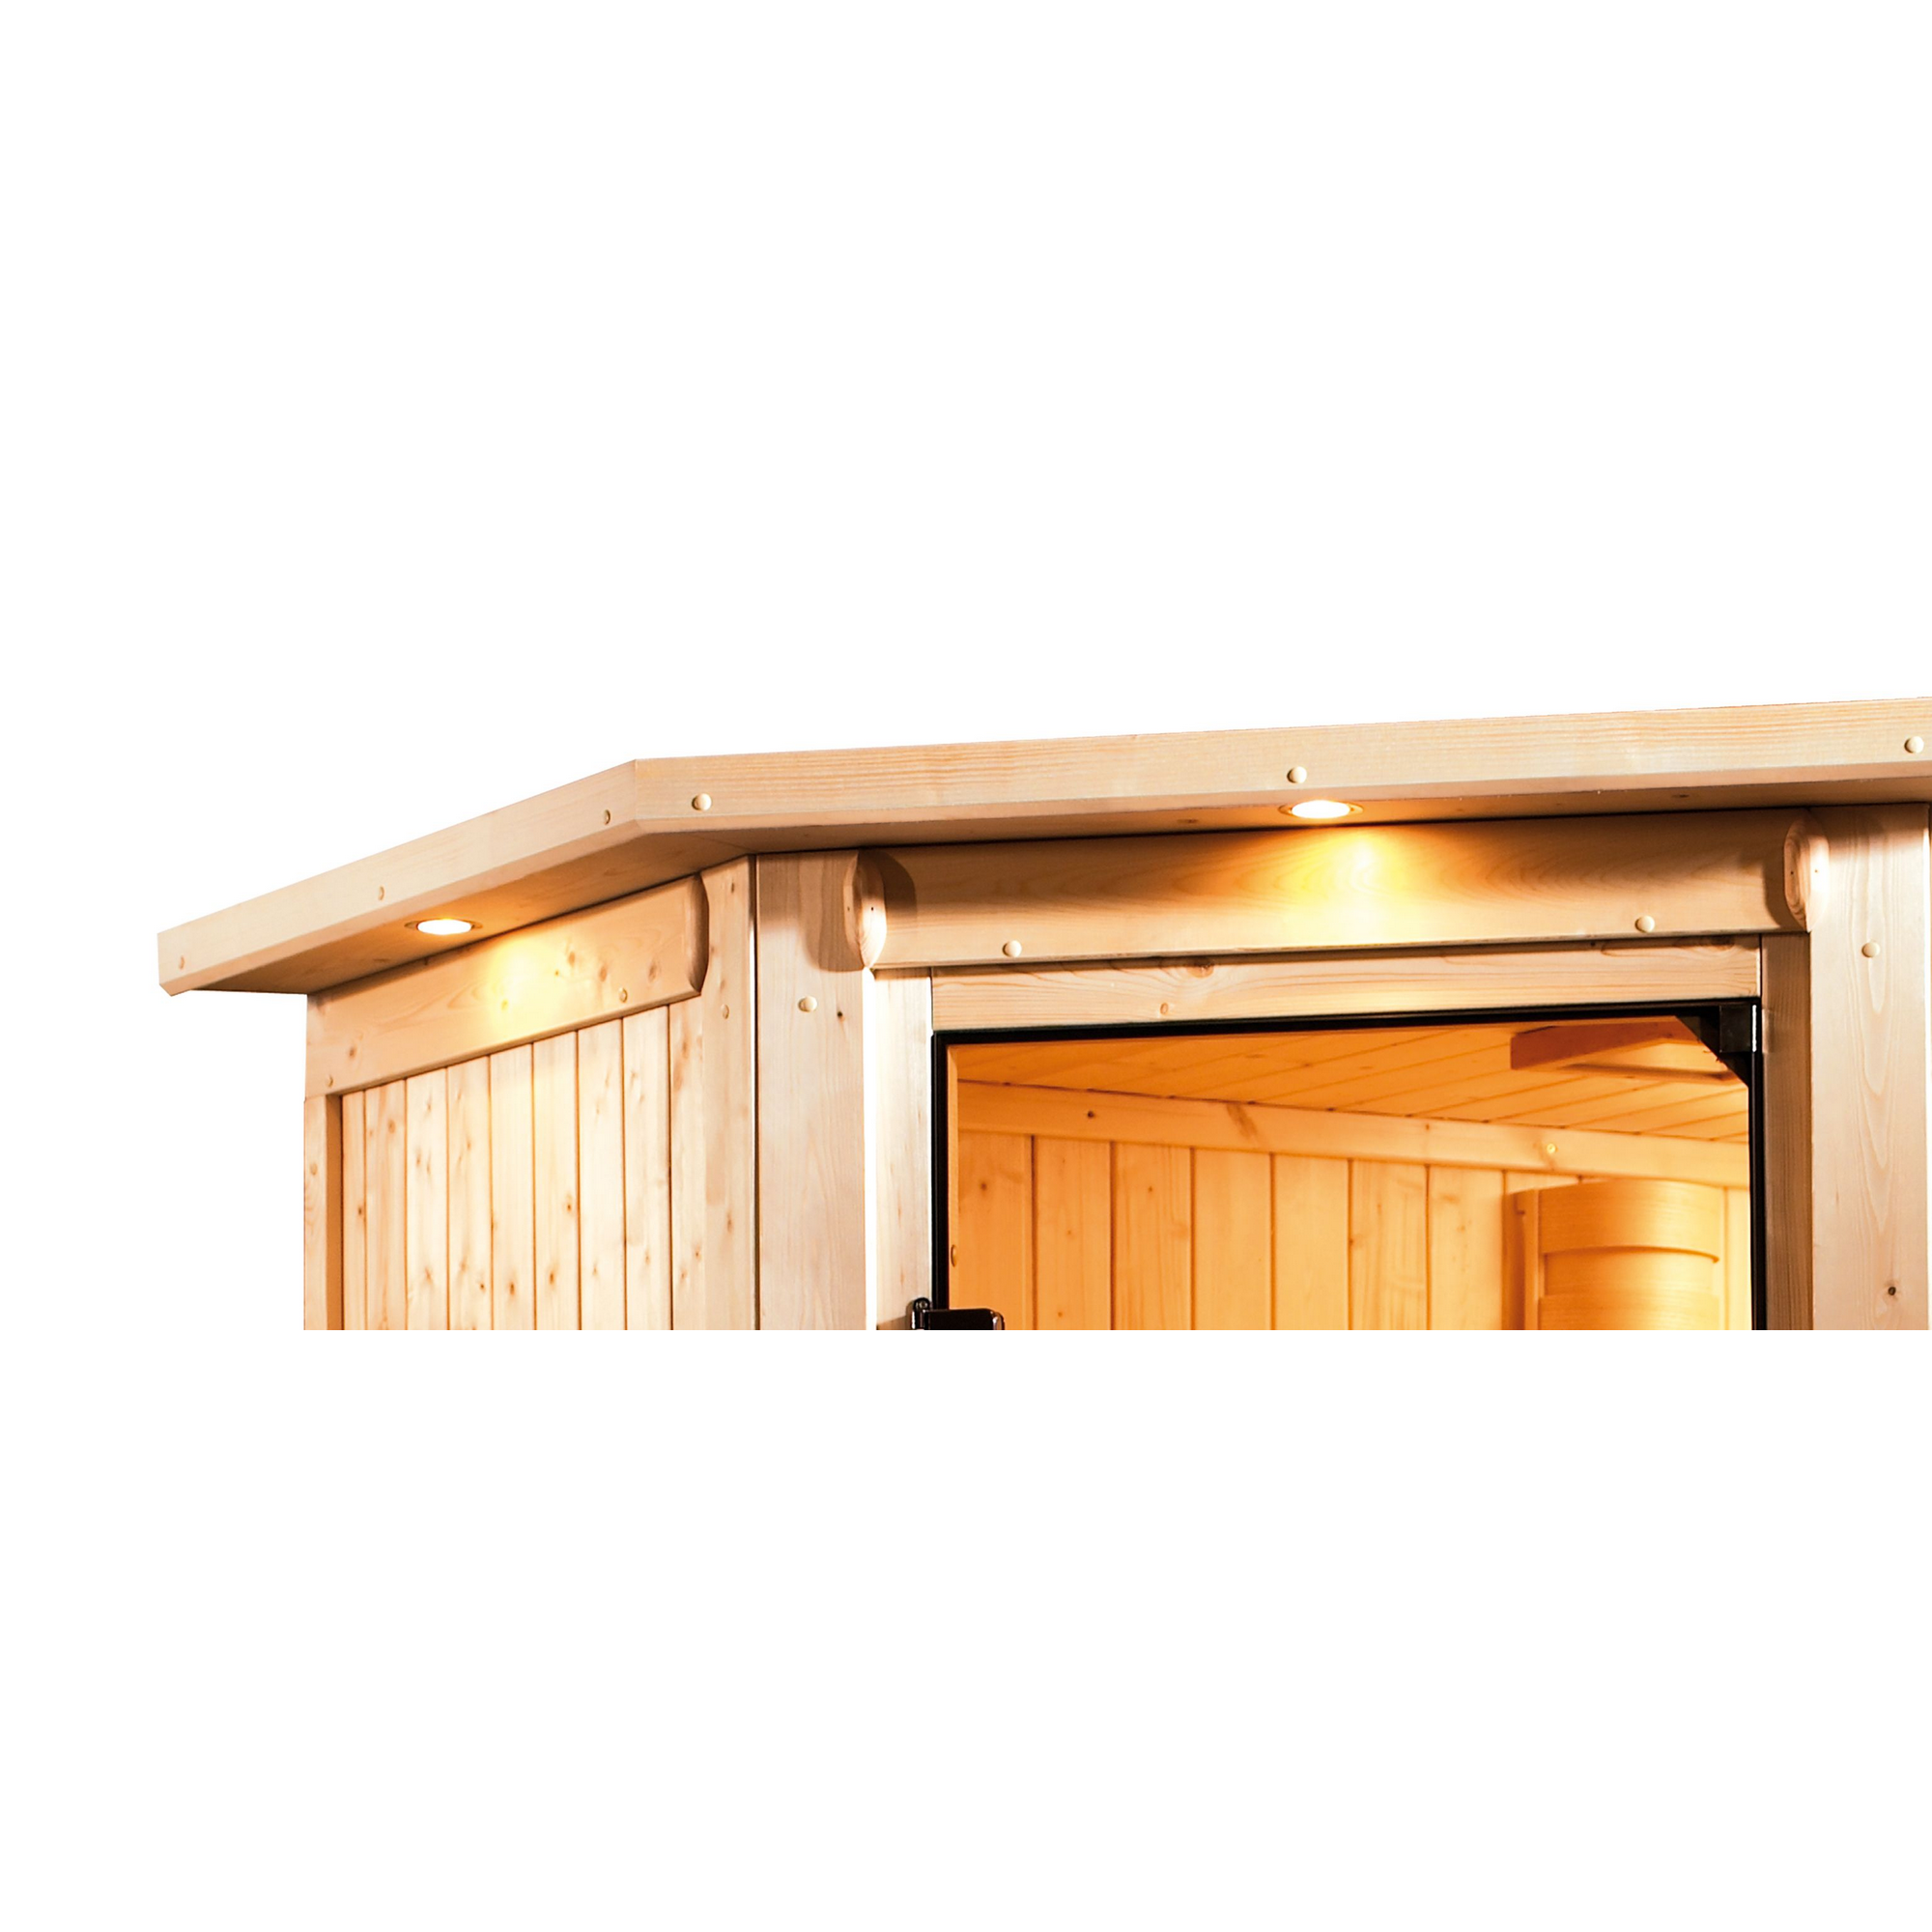 Massivholzsauna 'Imelda' naturbelassen mit Kranz und bronzierter Tür 9 kW Ofen externe Steuerung modern 224 x 160 x 202 cm + product picture